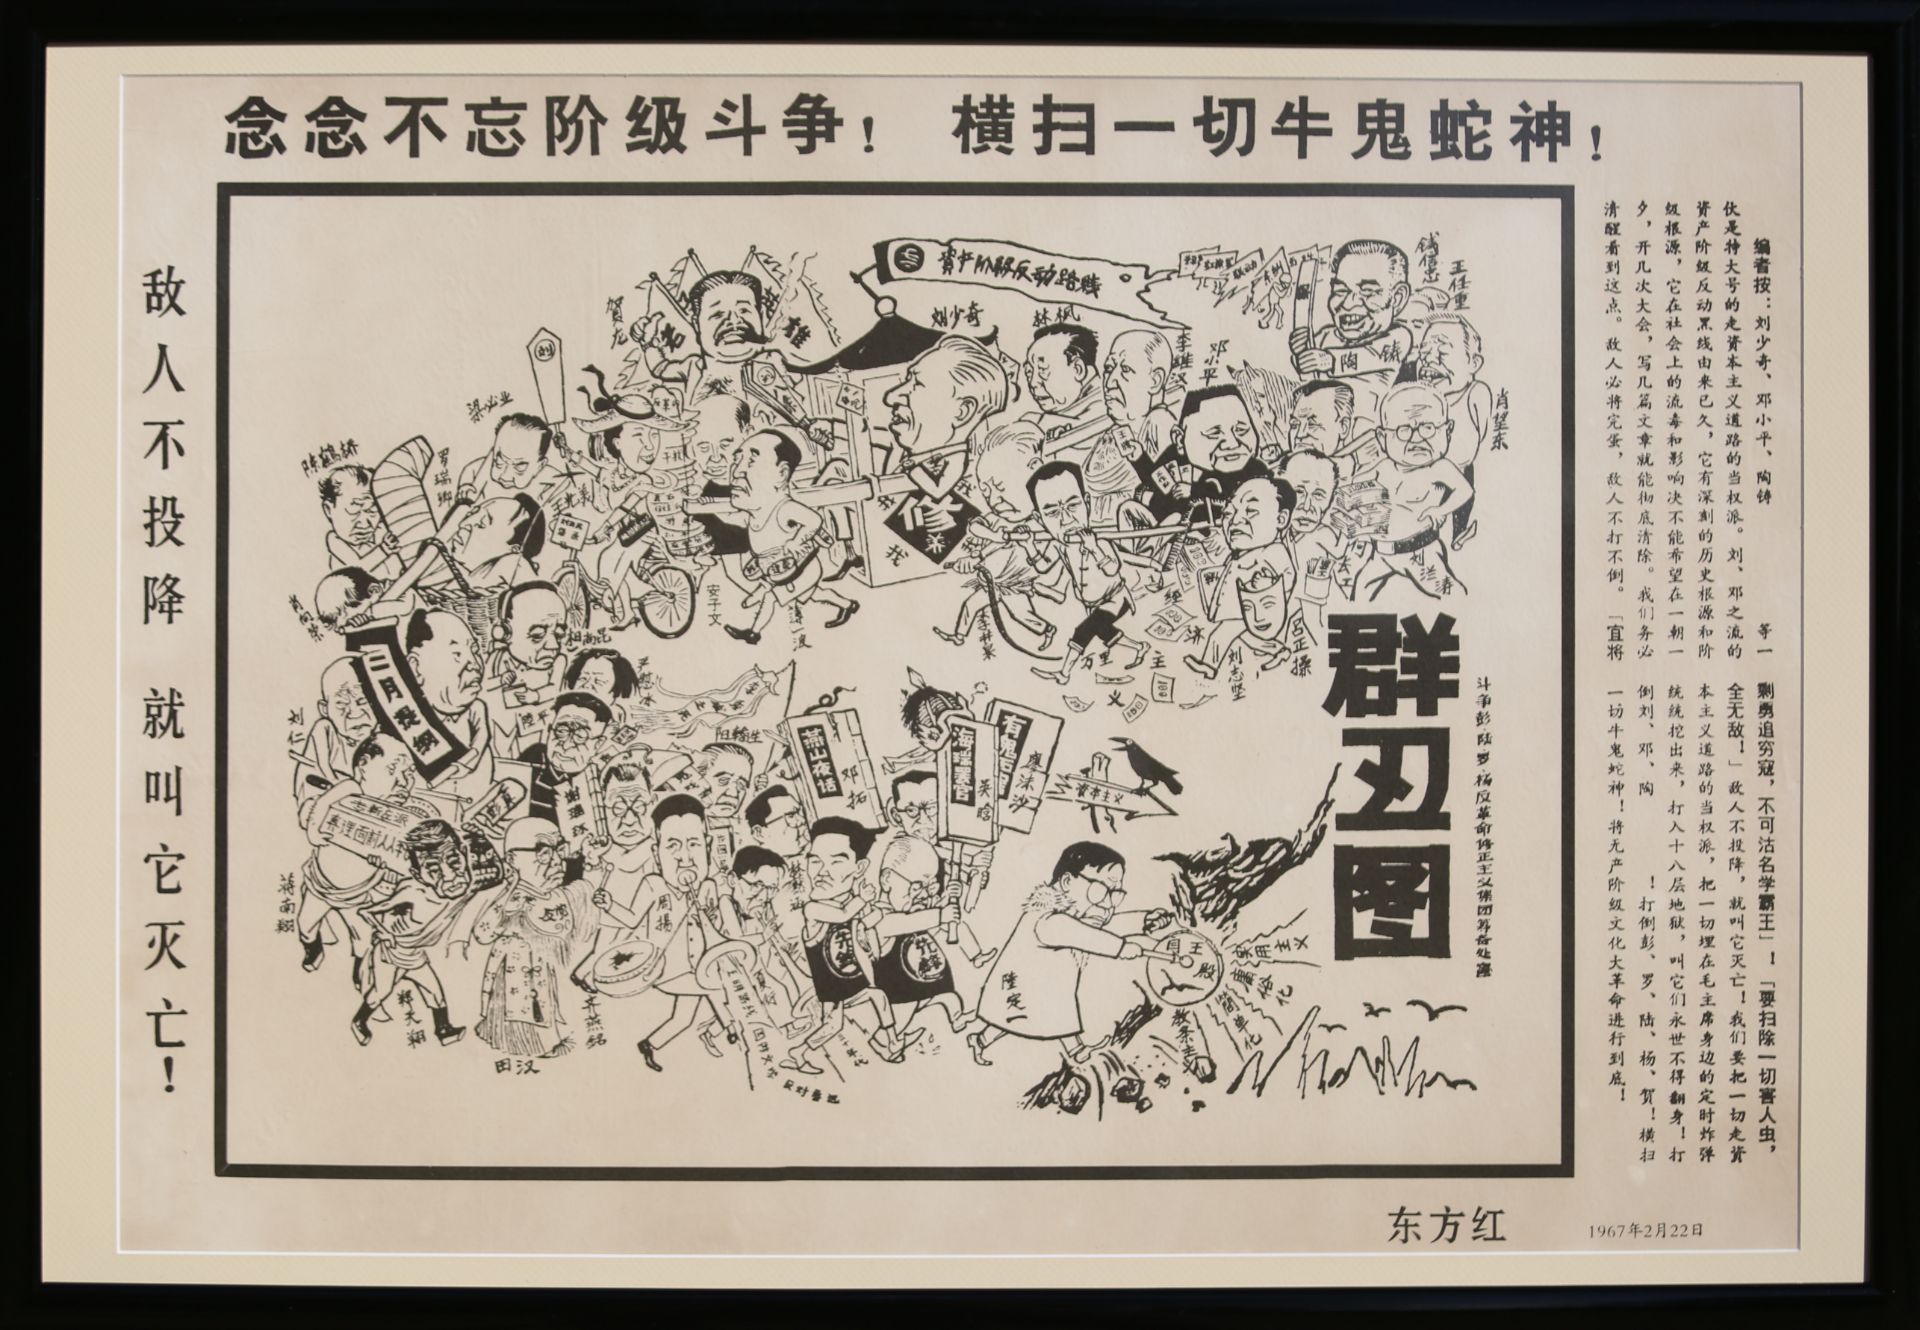 17 Affiches de propagande de la révolution culturelle chinoise Encadrée 75cm x 52cm - Bild 5 aus 17